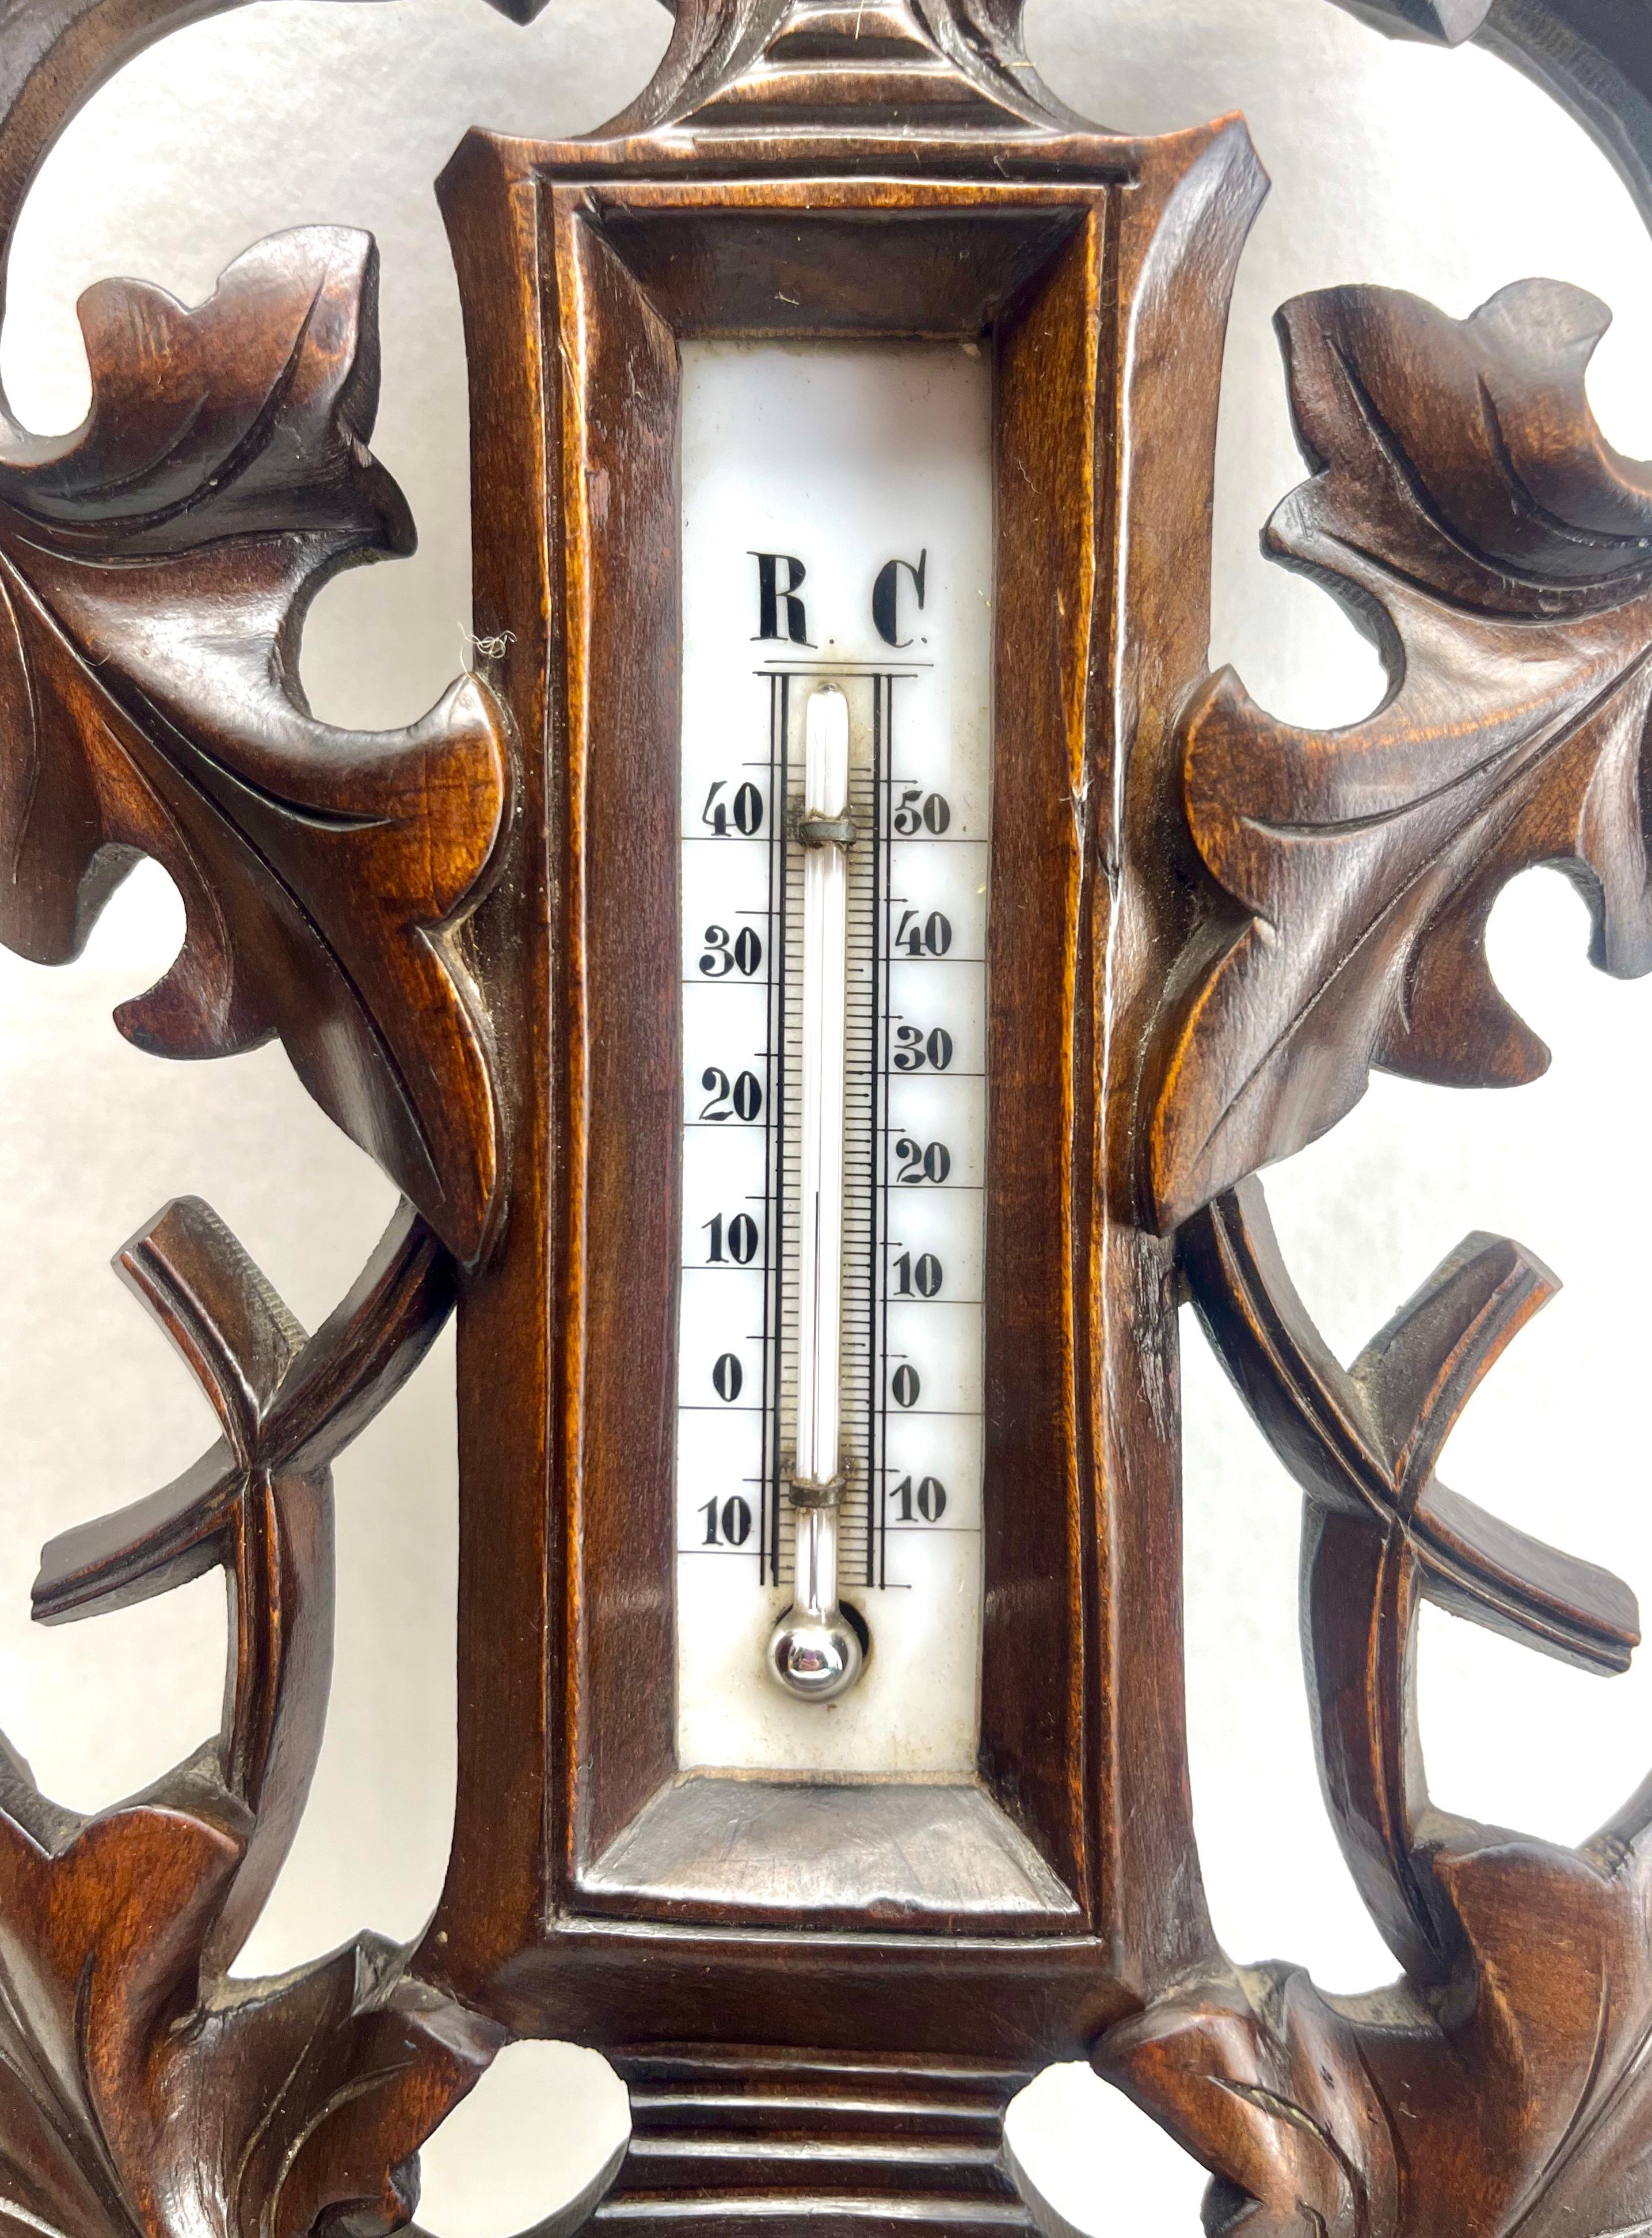 Schnitzerei aus Holz G Tart Lüttich antike Belgien Barometer mit Thermometer, 1910er Jahre

Ungewöhnliche antike geschnitzt hölzernen Barometer in einem schönen geschnitzten Fall, Funktionsfähigkeit.

Mit freundlichen Grüßen, Geert
